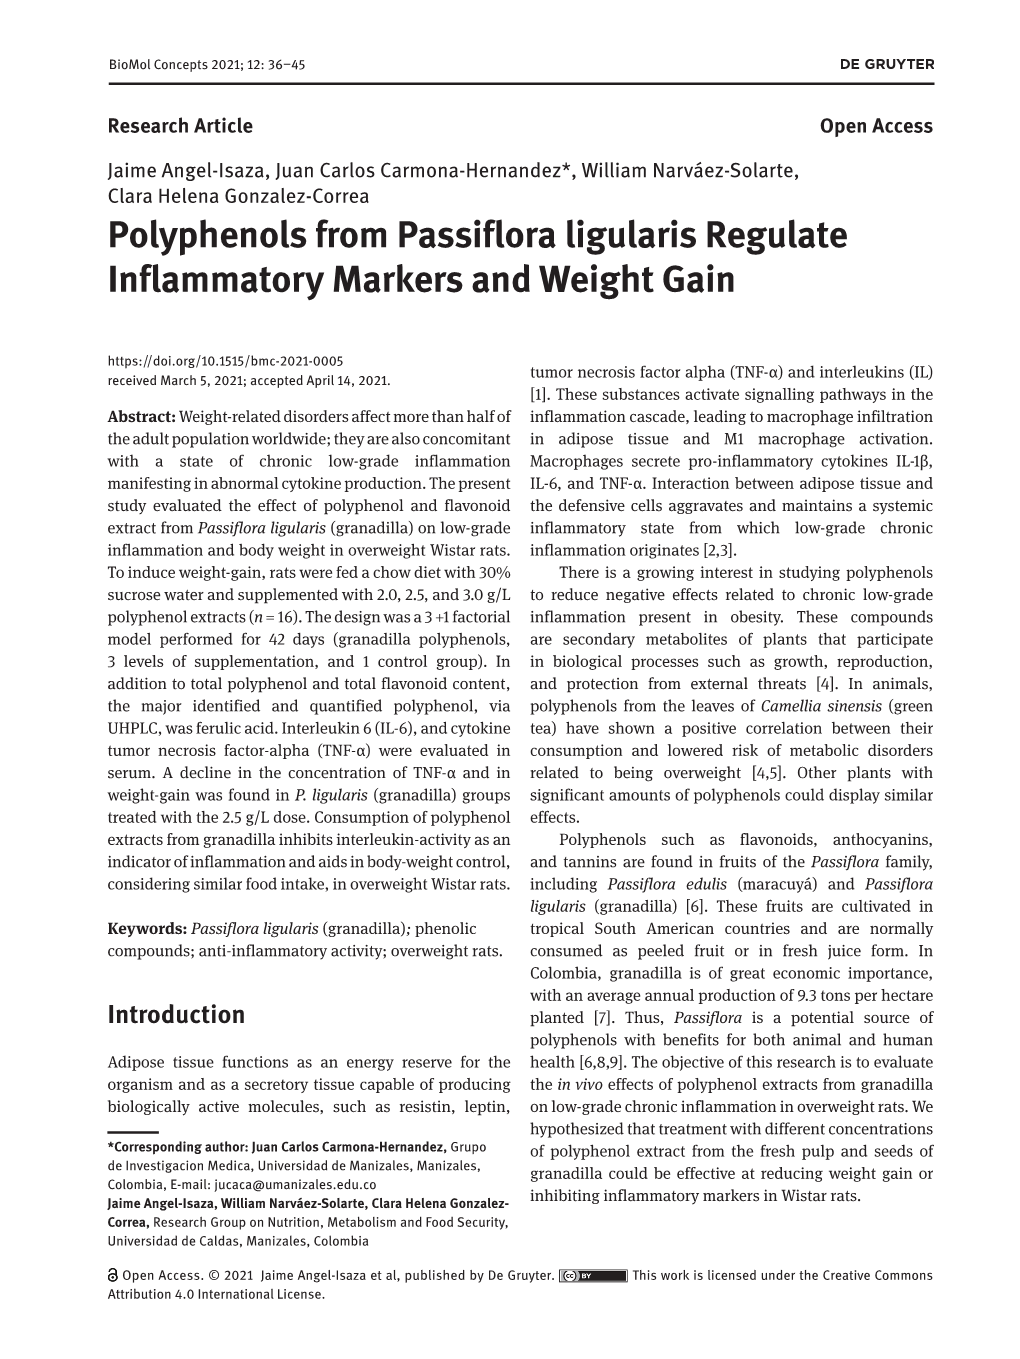 Polyphenols from Passiflora Ligularis Regulate Inflammatory Markers and Weight Gain